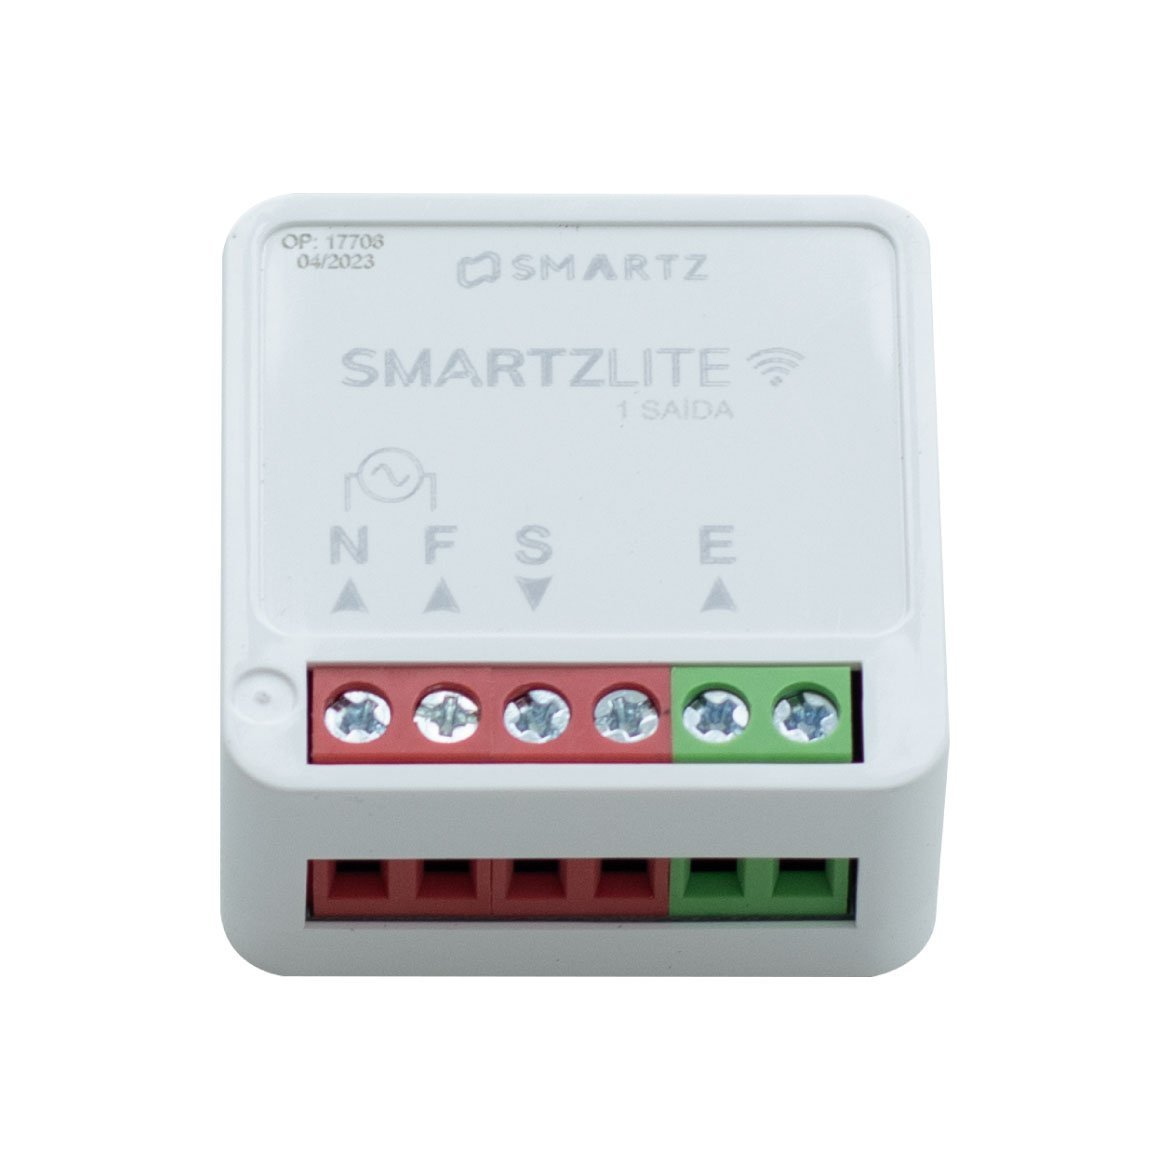 Controlador Programável Smartz Lite 1 Canal Stz1391n St2917 - 1